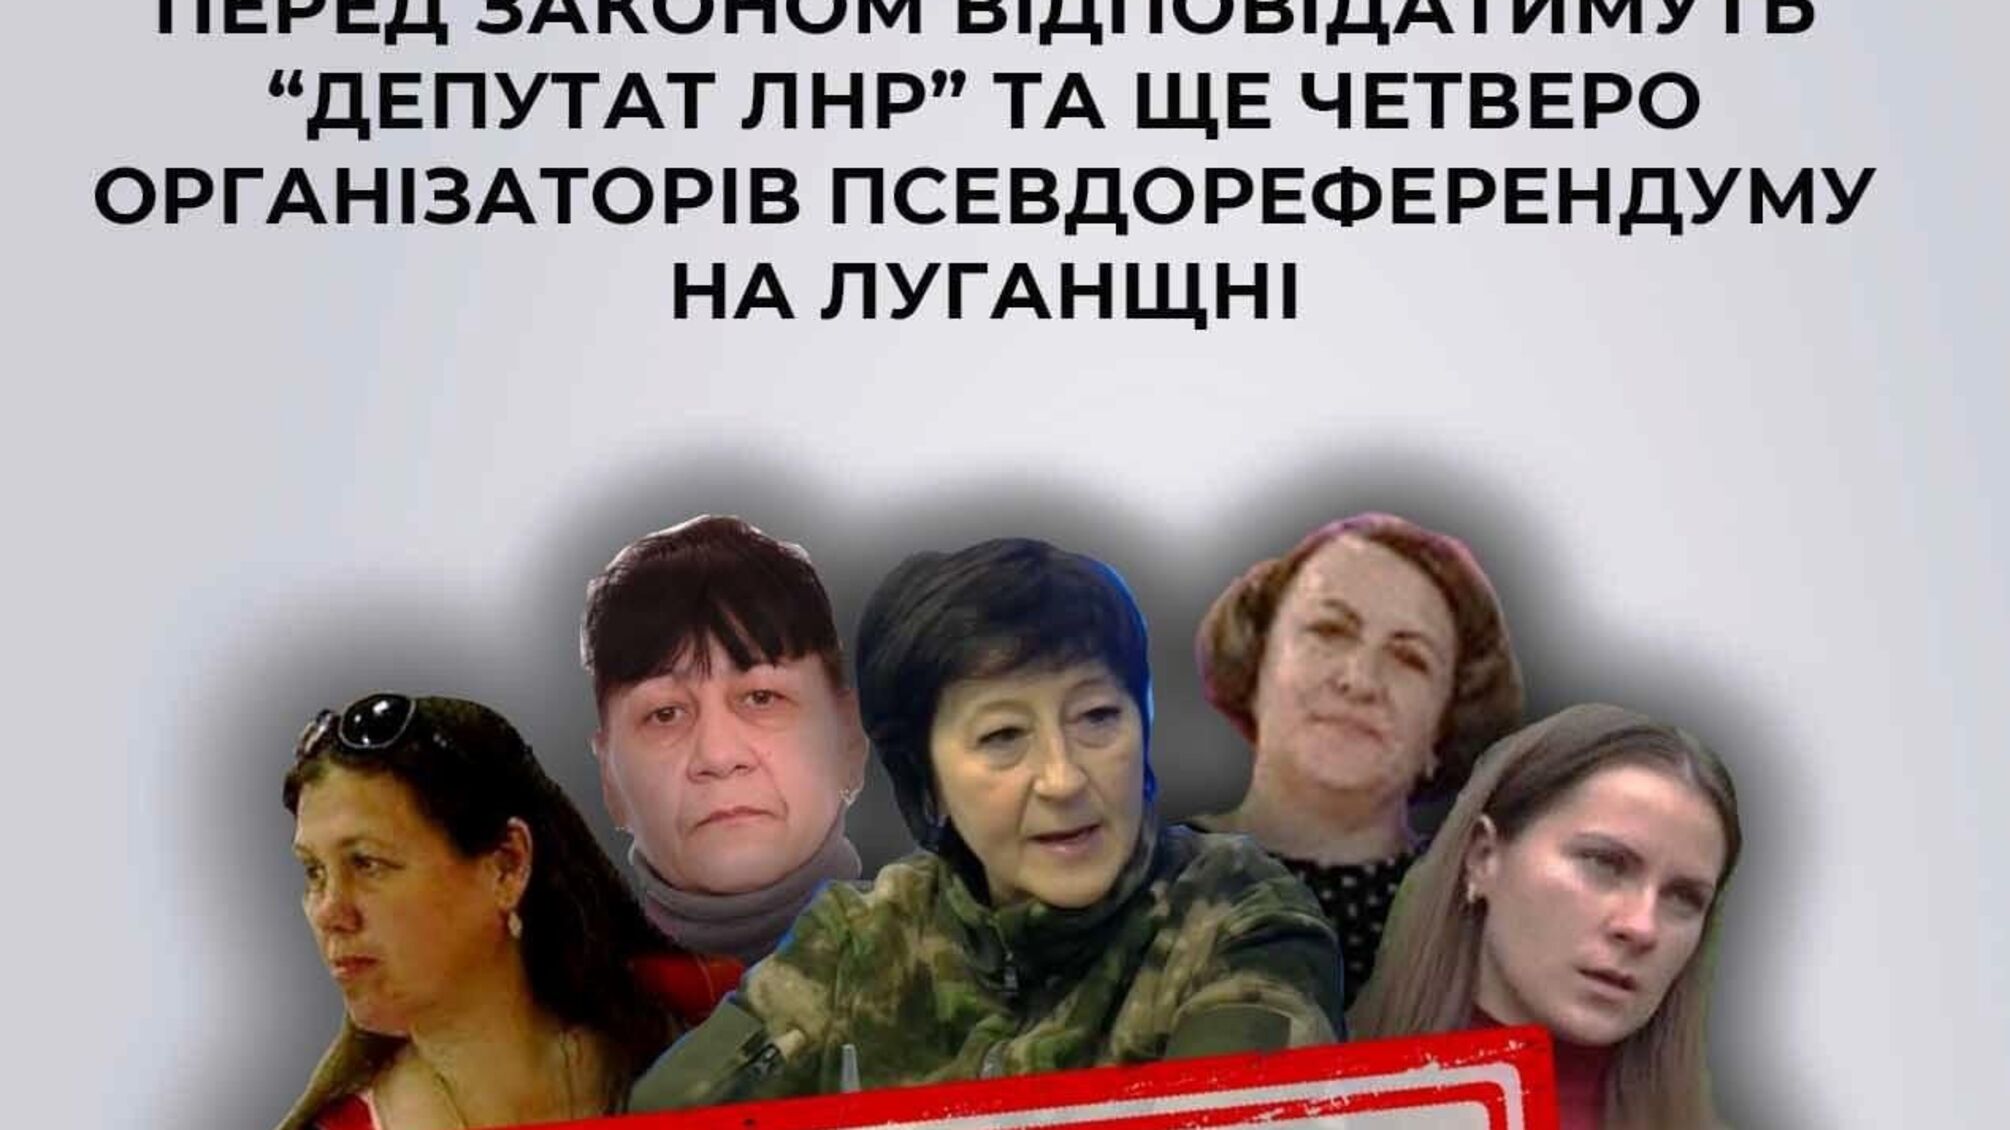 Осуждены пять коллаборантов: «депутат лнр» и четверо организаторов псевдореферендума в Луганской области